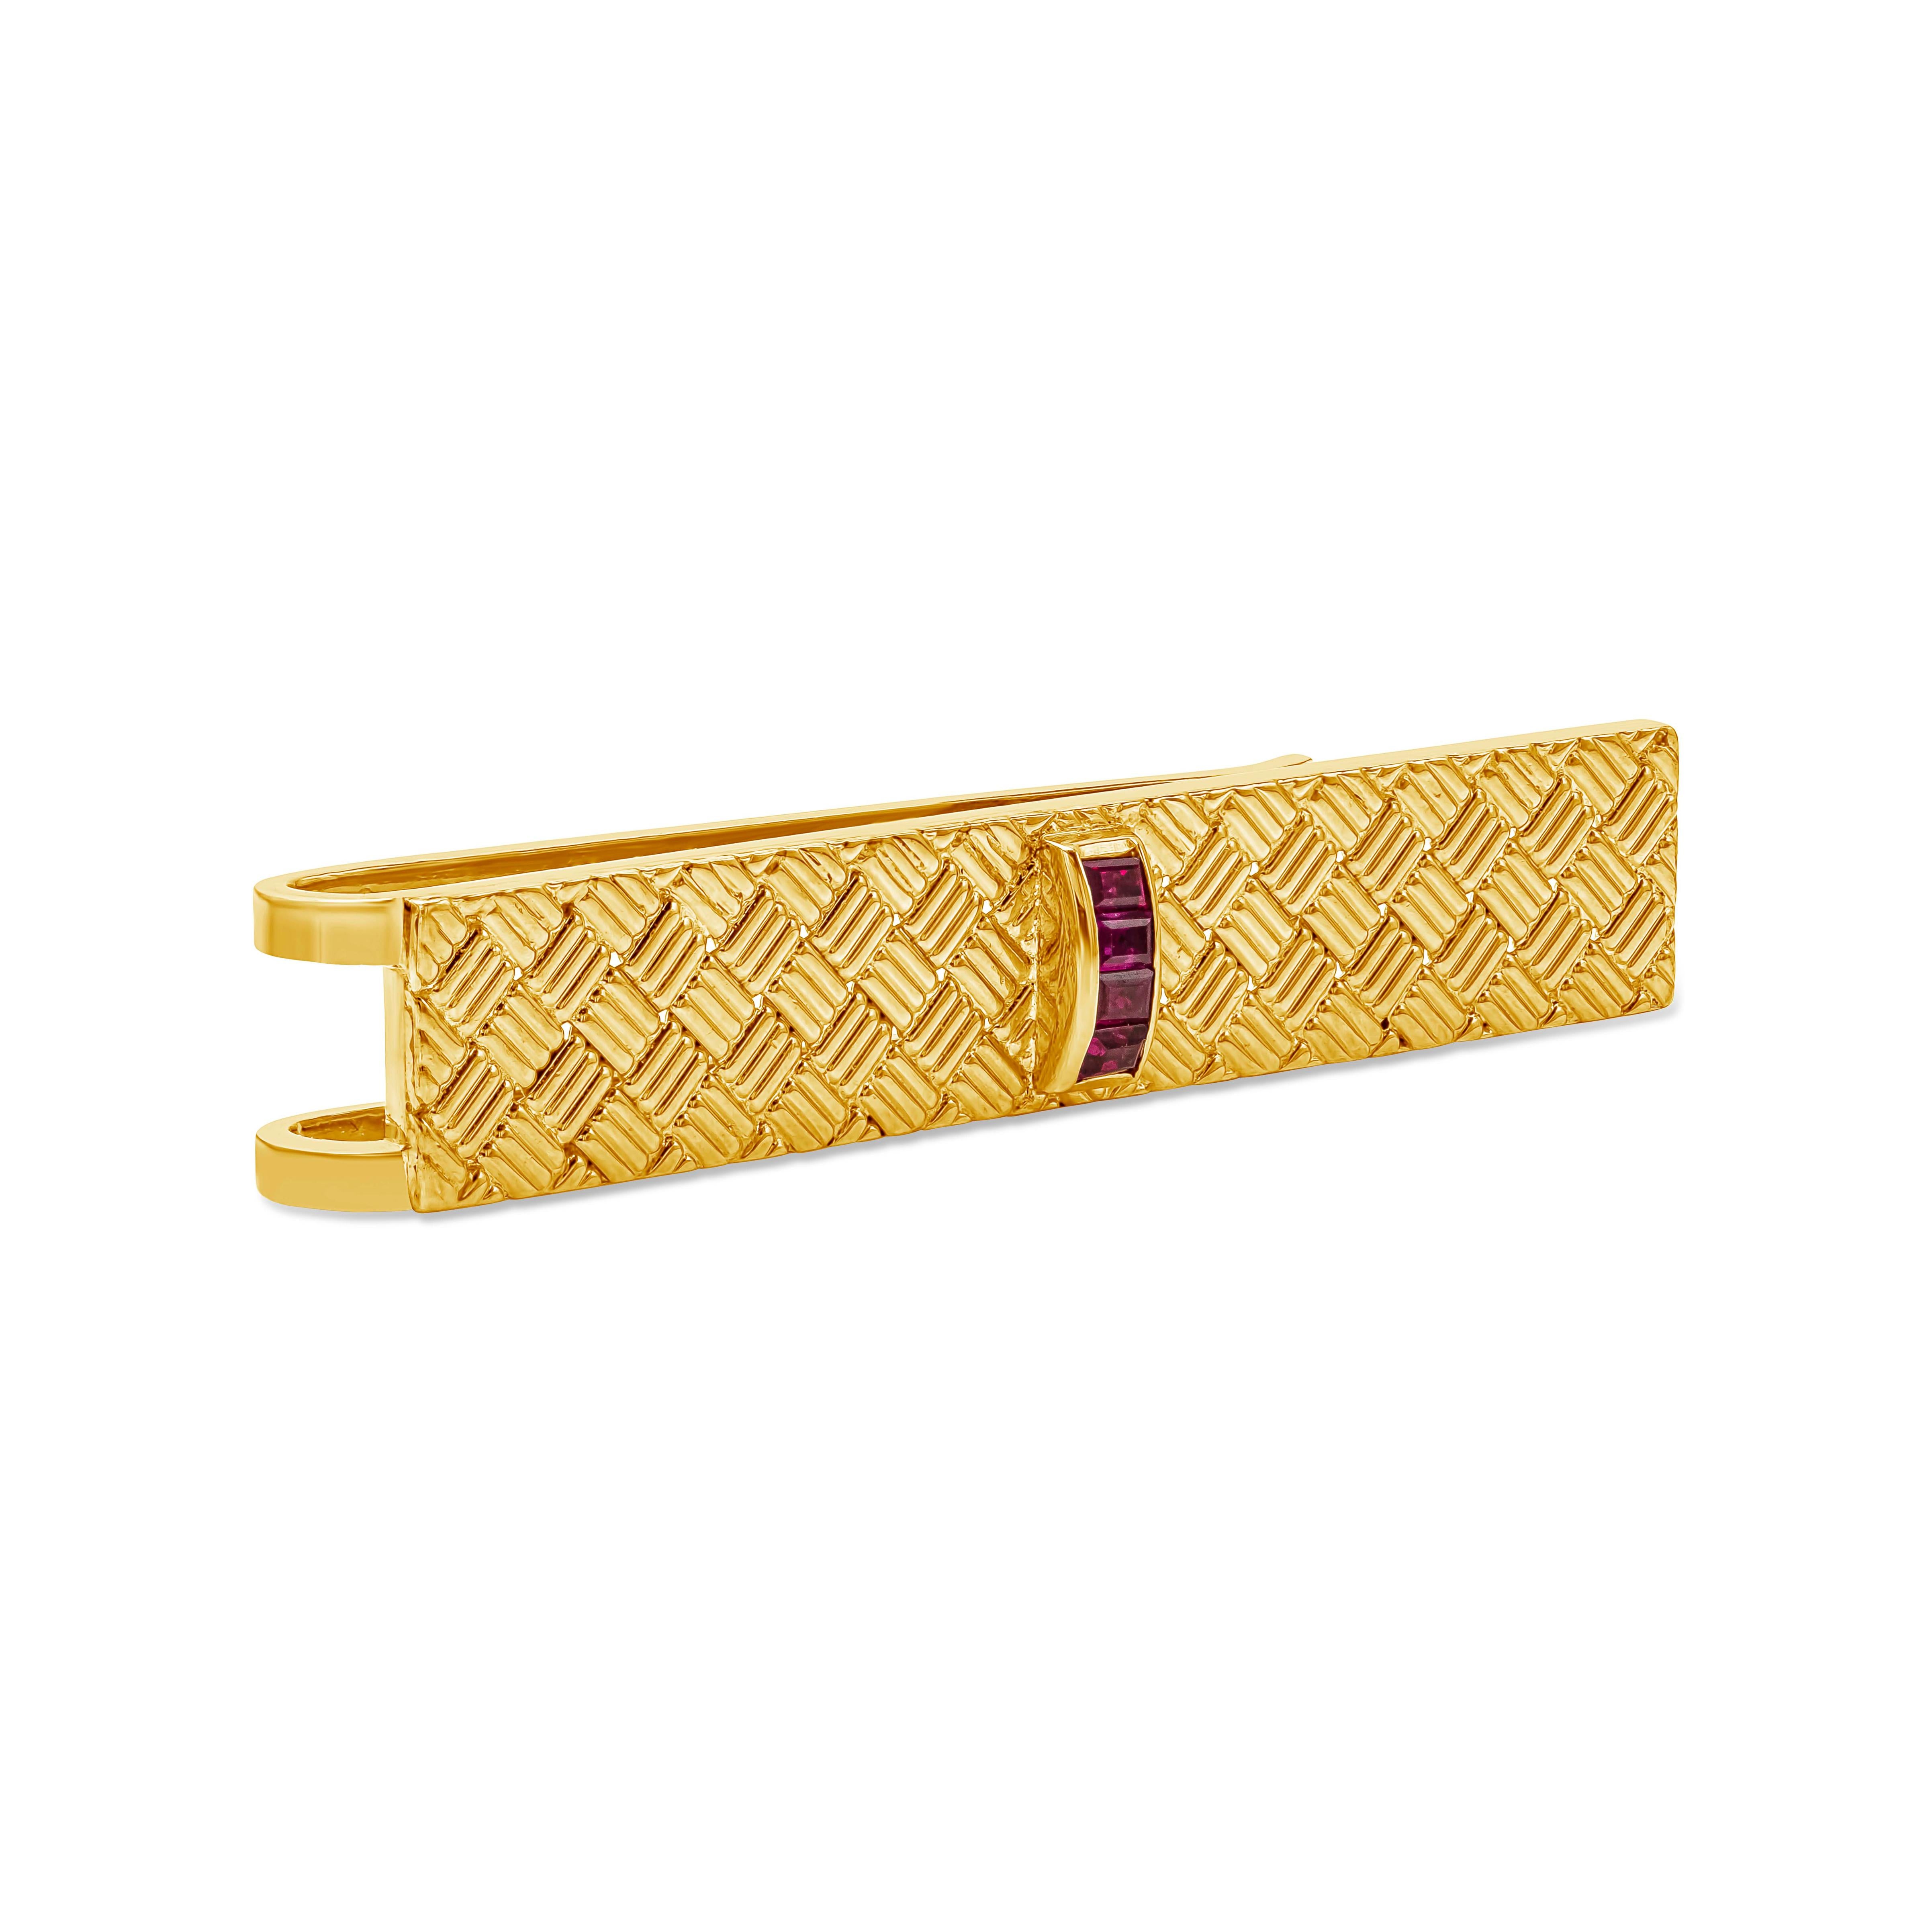 Hergestellt und signiert von Tiffany & Co. Die Krawattenklammer mit Webmuster ist mit drei Rubinen in der Mitte verziert. Rubine wiegen 0,35 Karat. Hergestellt aus 18k Gelbgold.